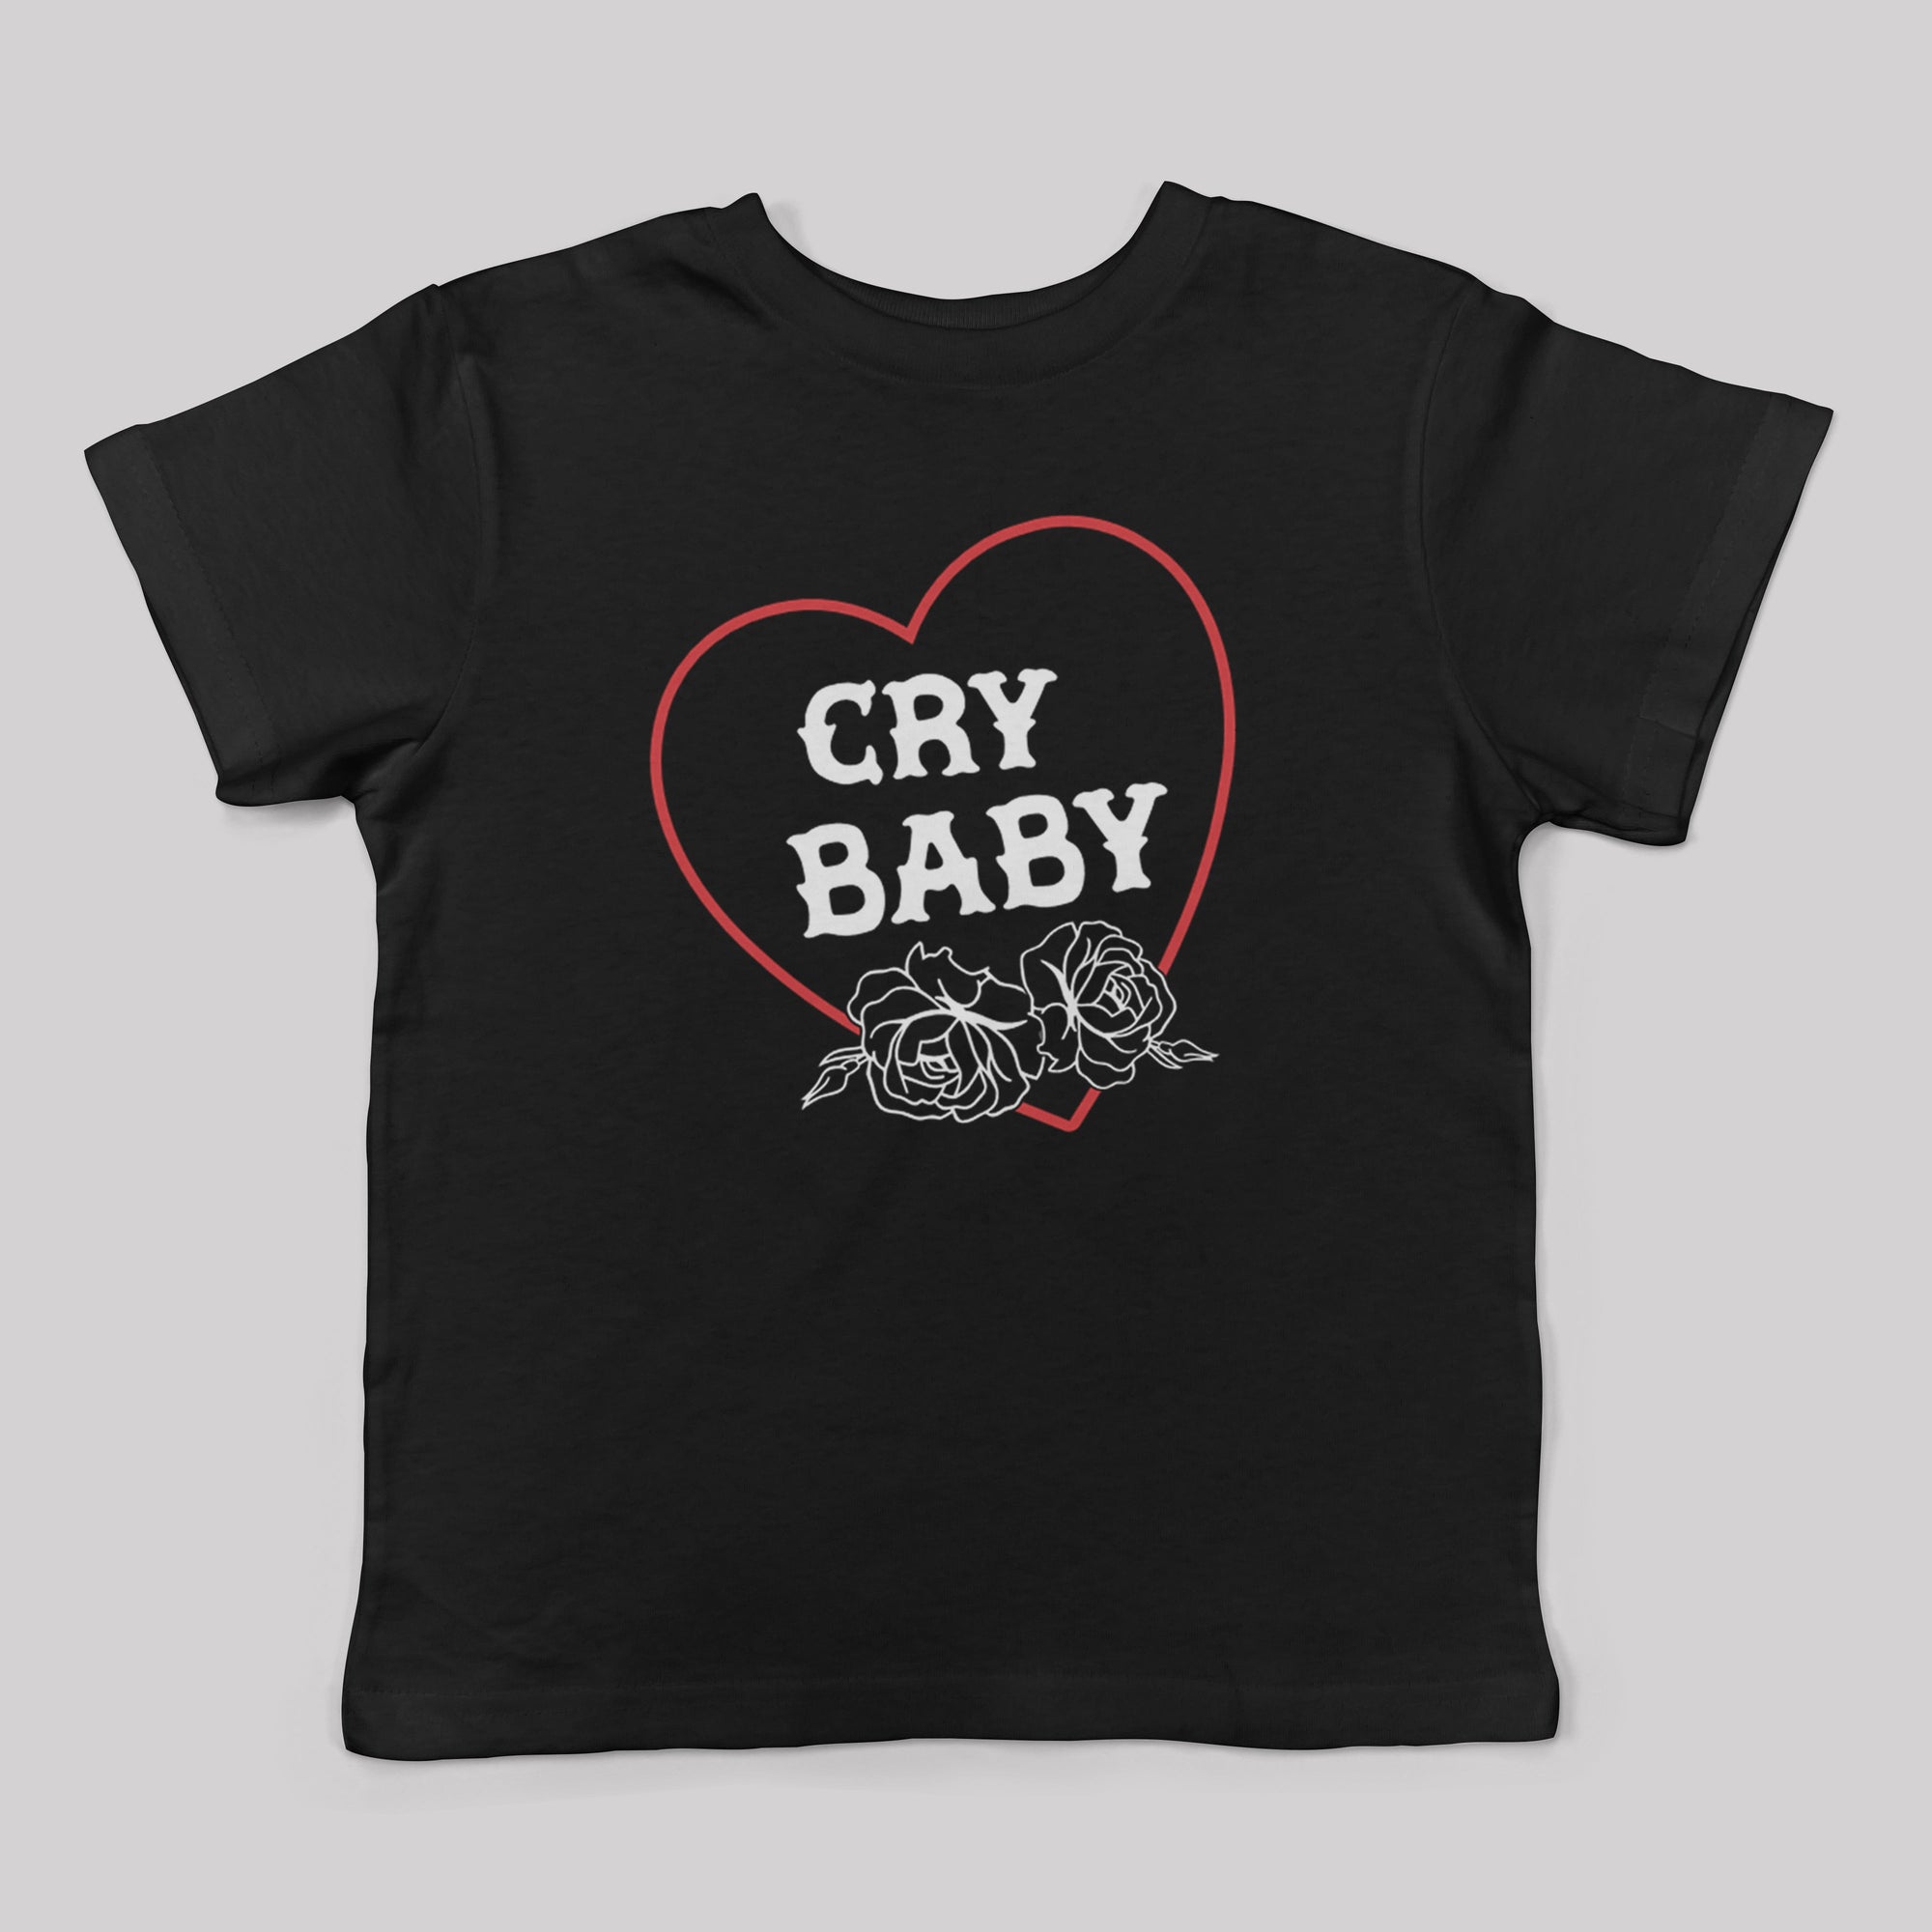 Cry Baby Kids Tee